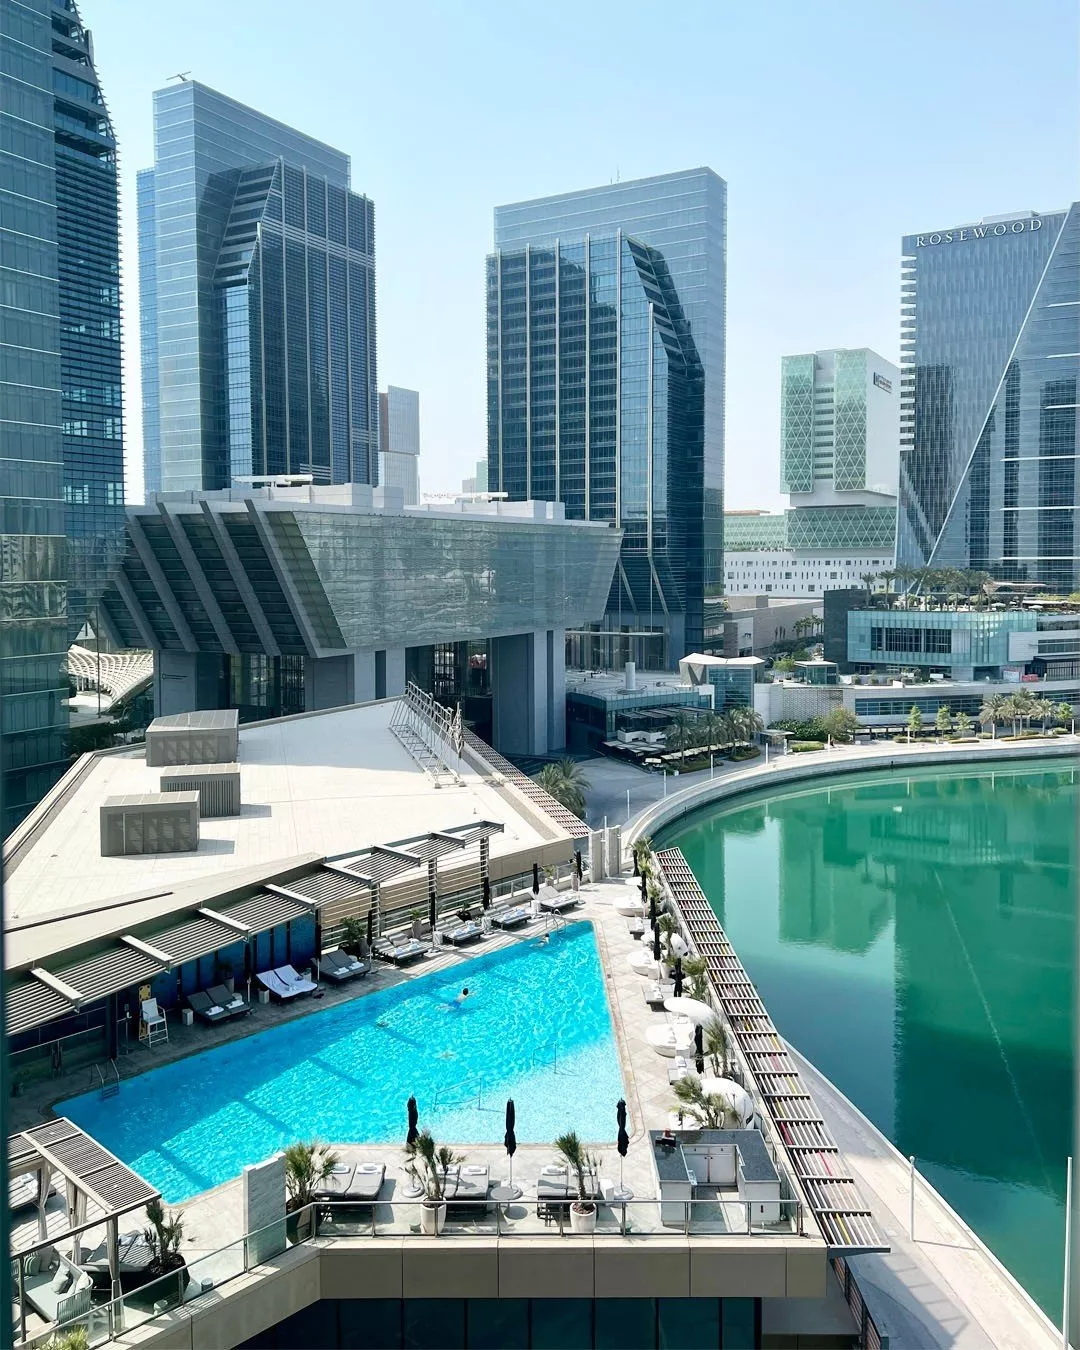 أفضل فنادق في أبو ظبي لقضاء عطلة مريحة وممتعة